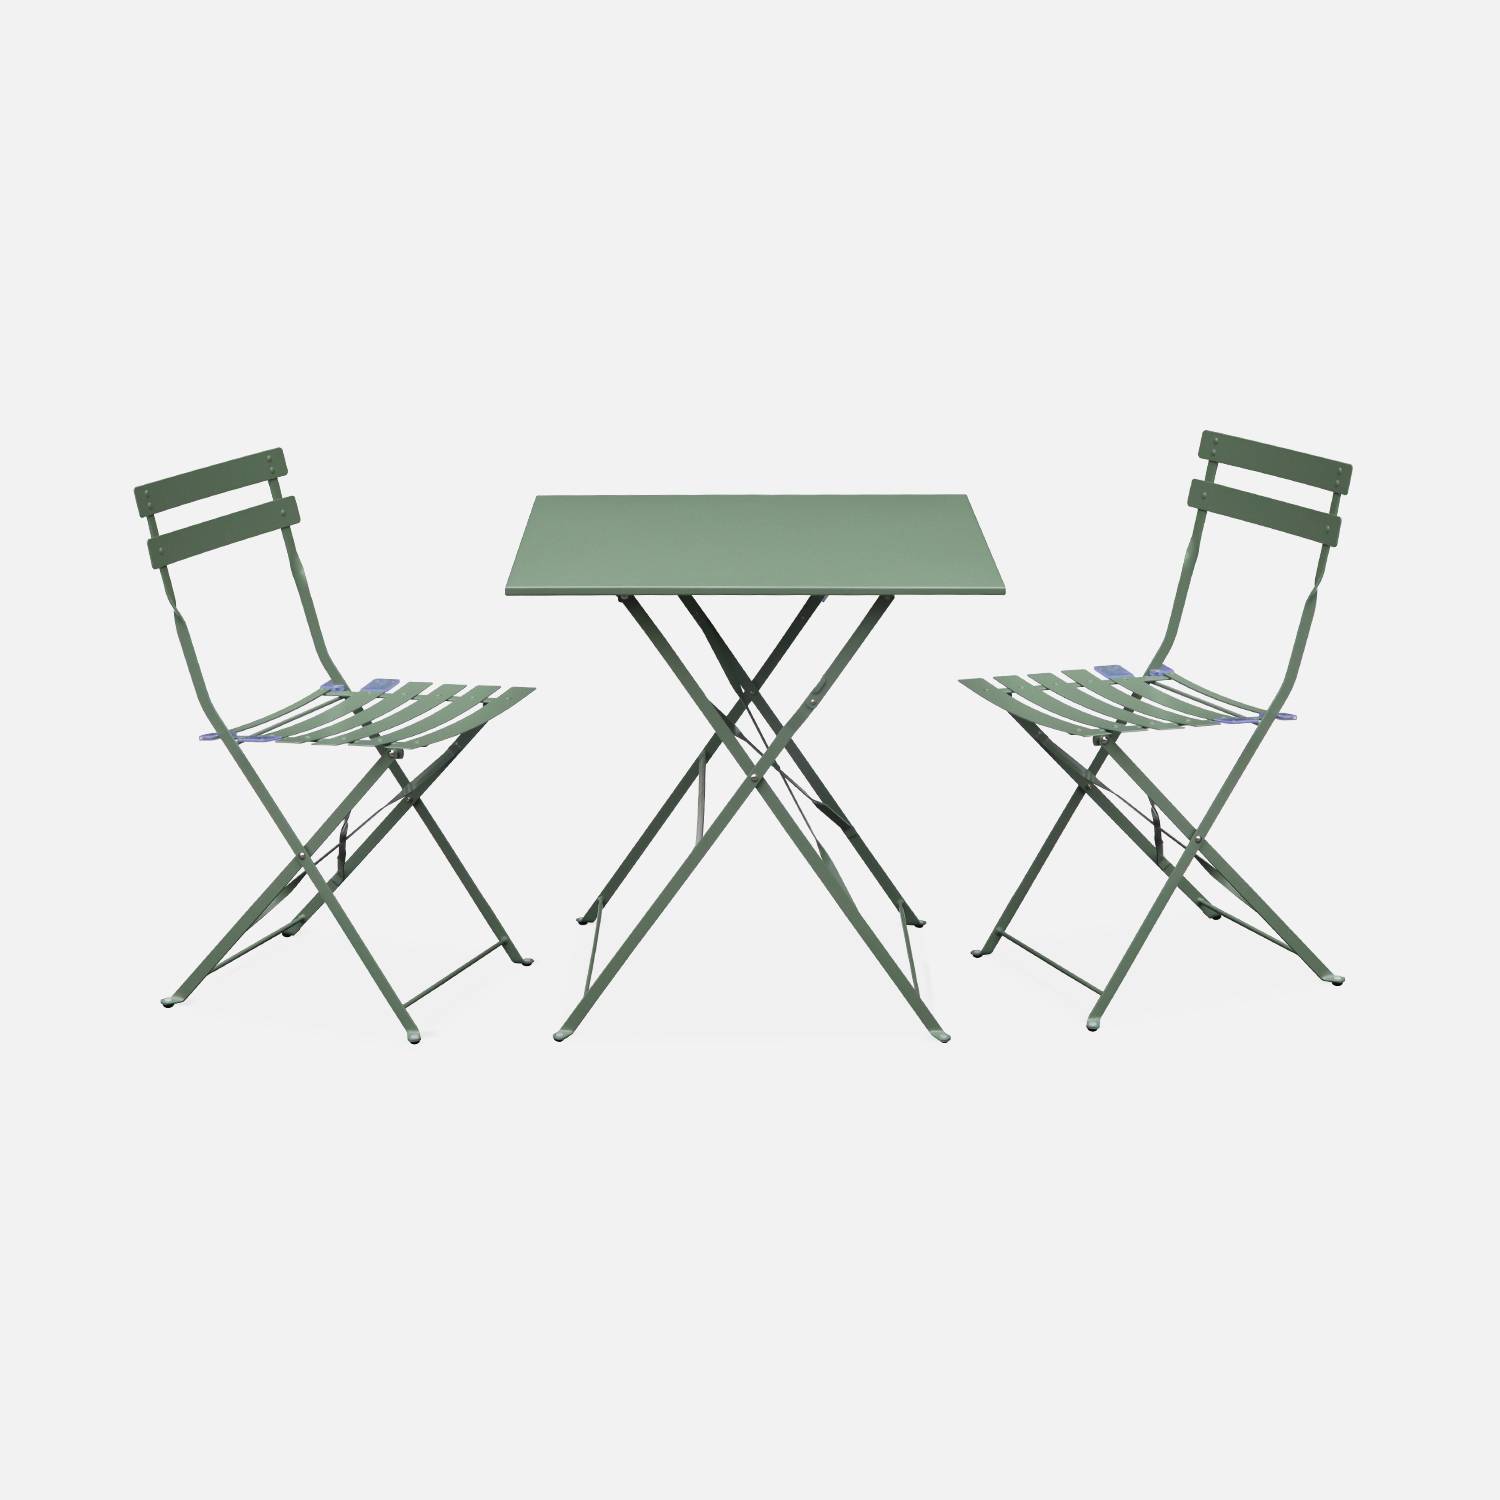 Klappbare Bistro-Gartenmöbel - Emilia quadratisch graugrün - Tisch 70x70cm mit zwei Klappstühlen aus pulverbeschichtetem Stahl Photo1